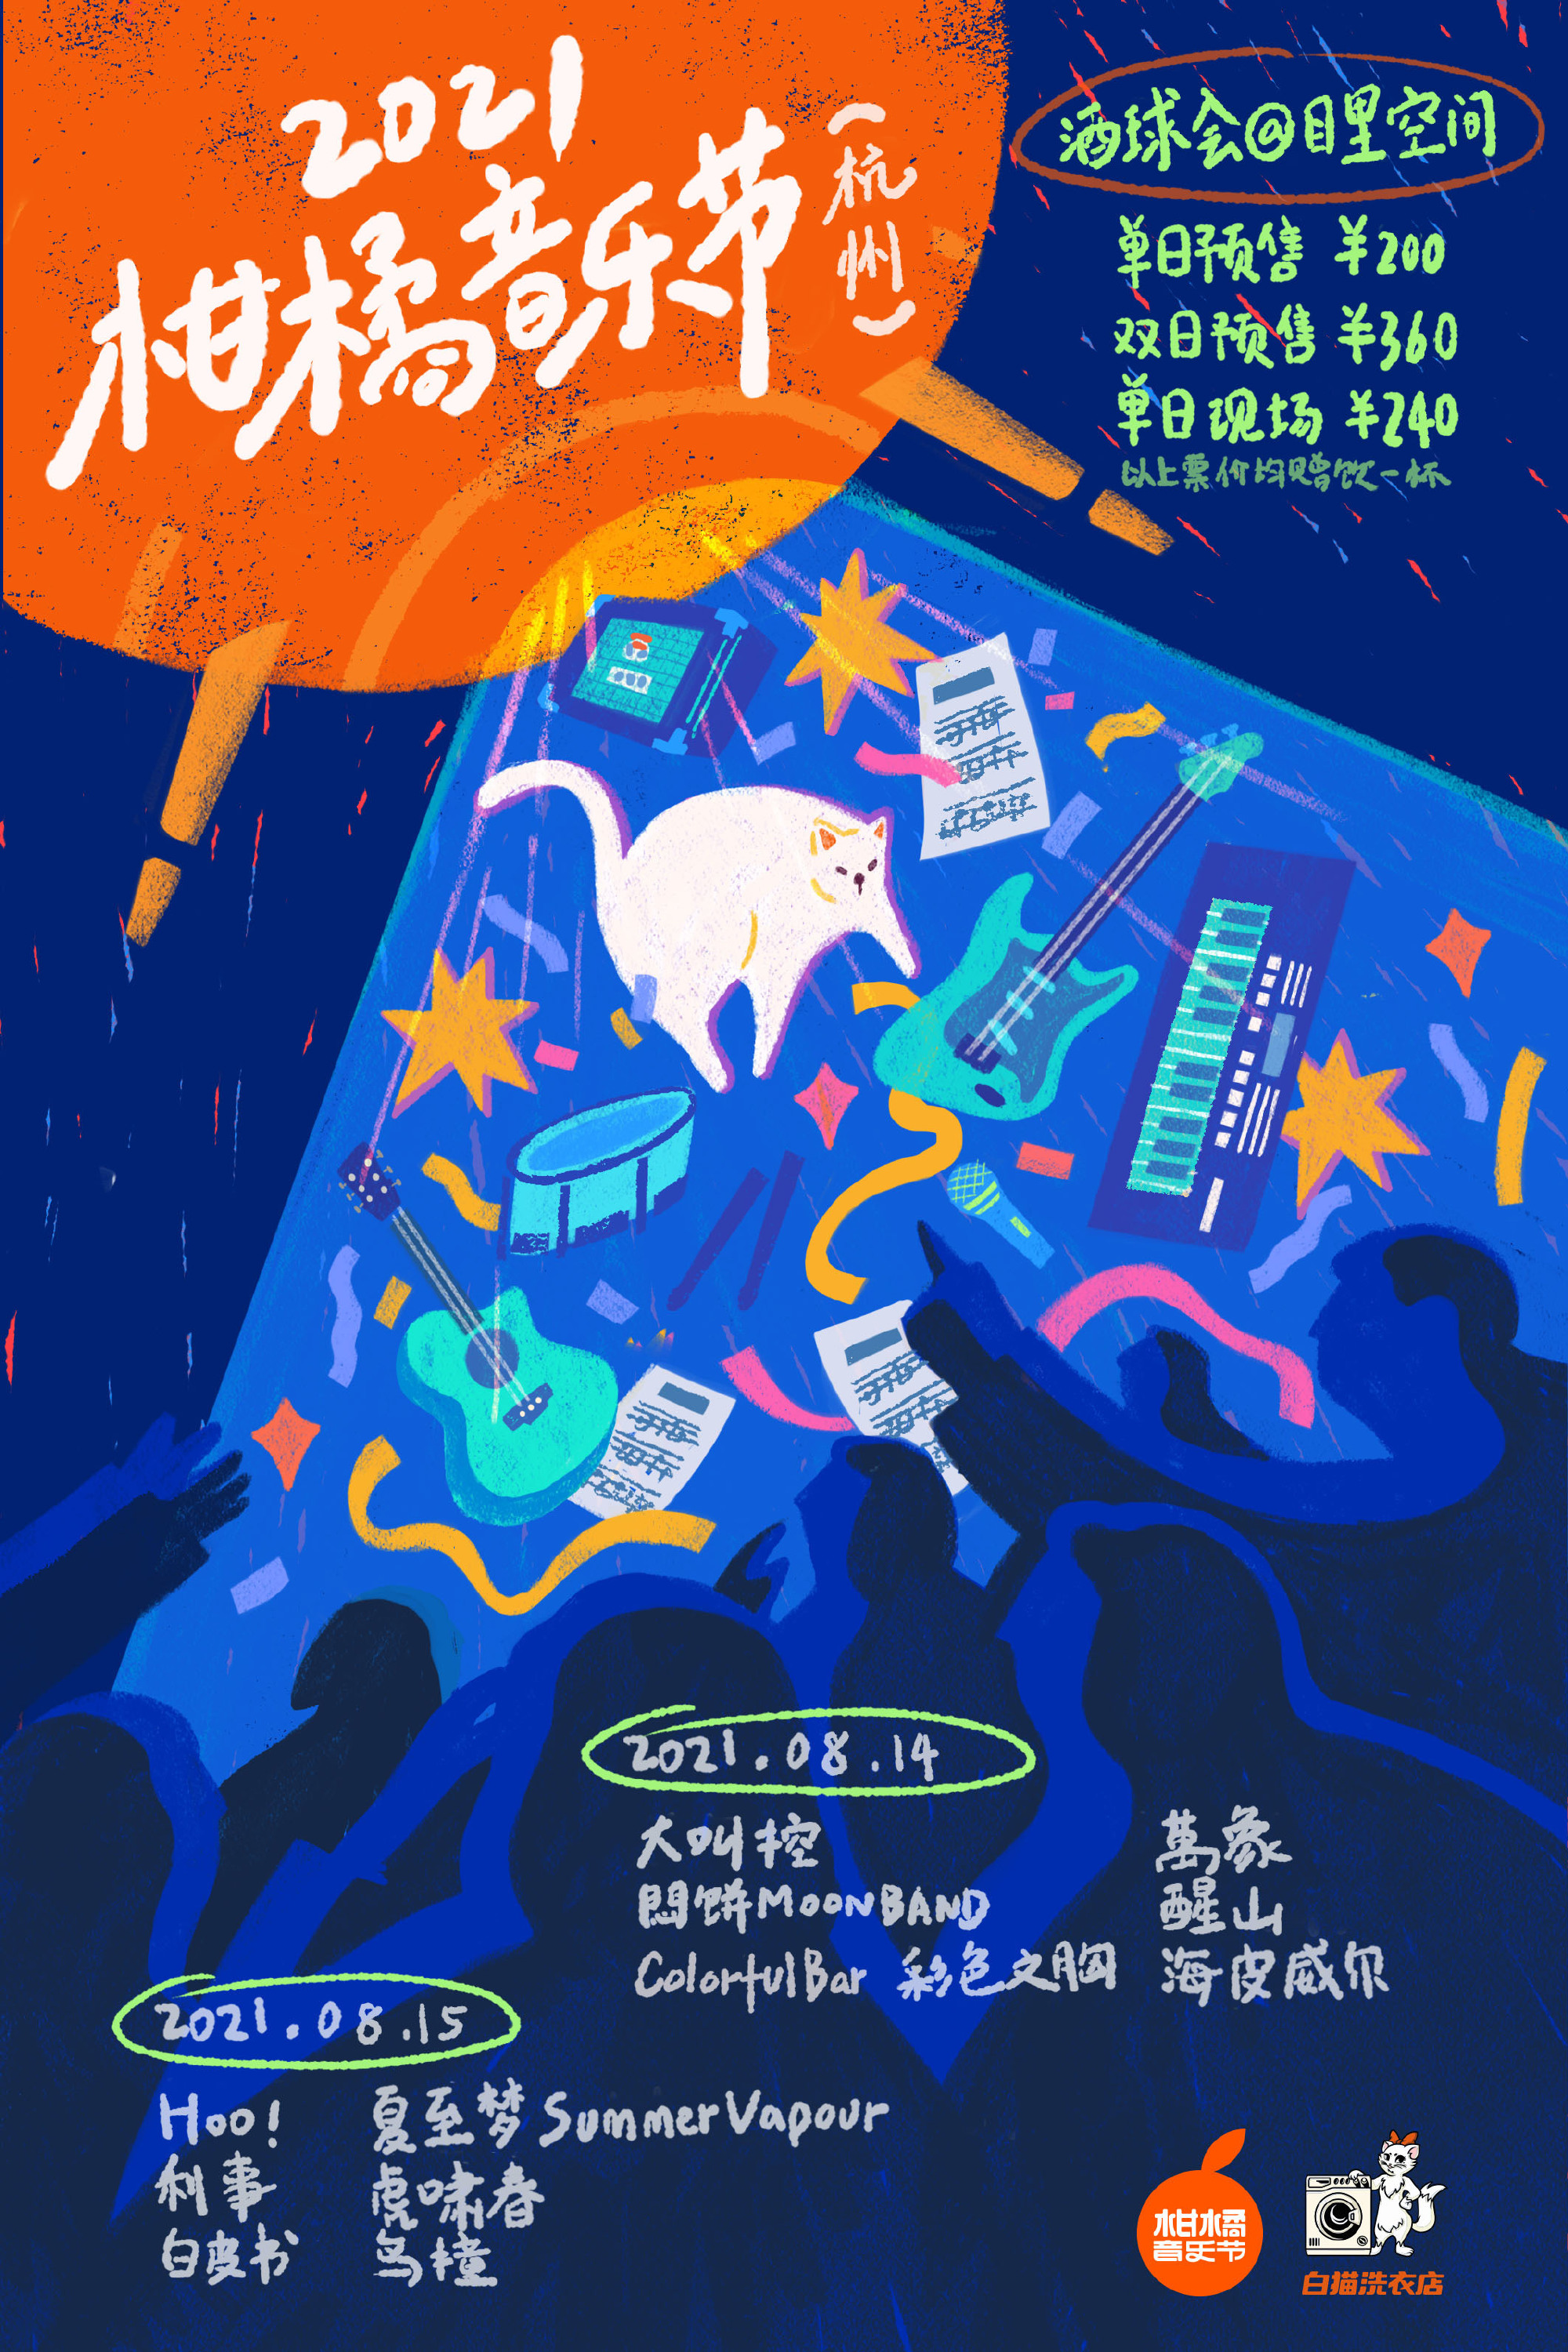 2021杭州柑橘音乐节门票信息及阵容介绍